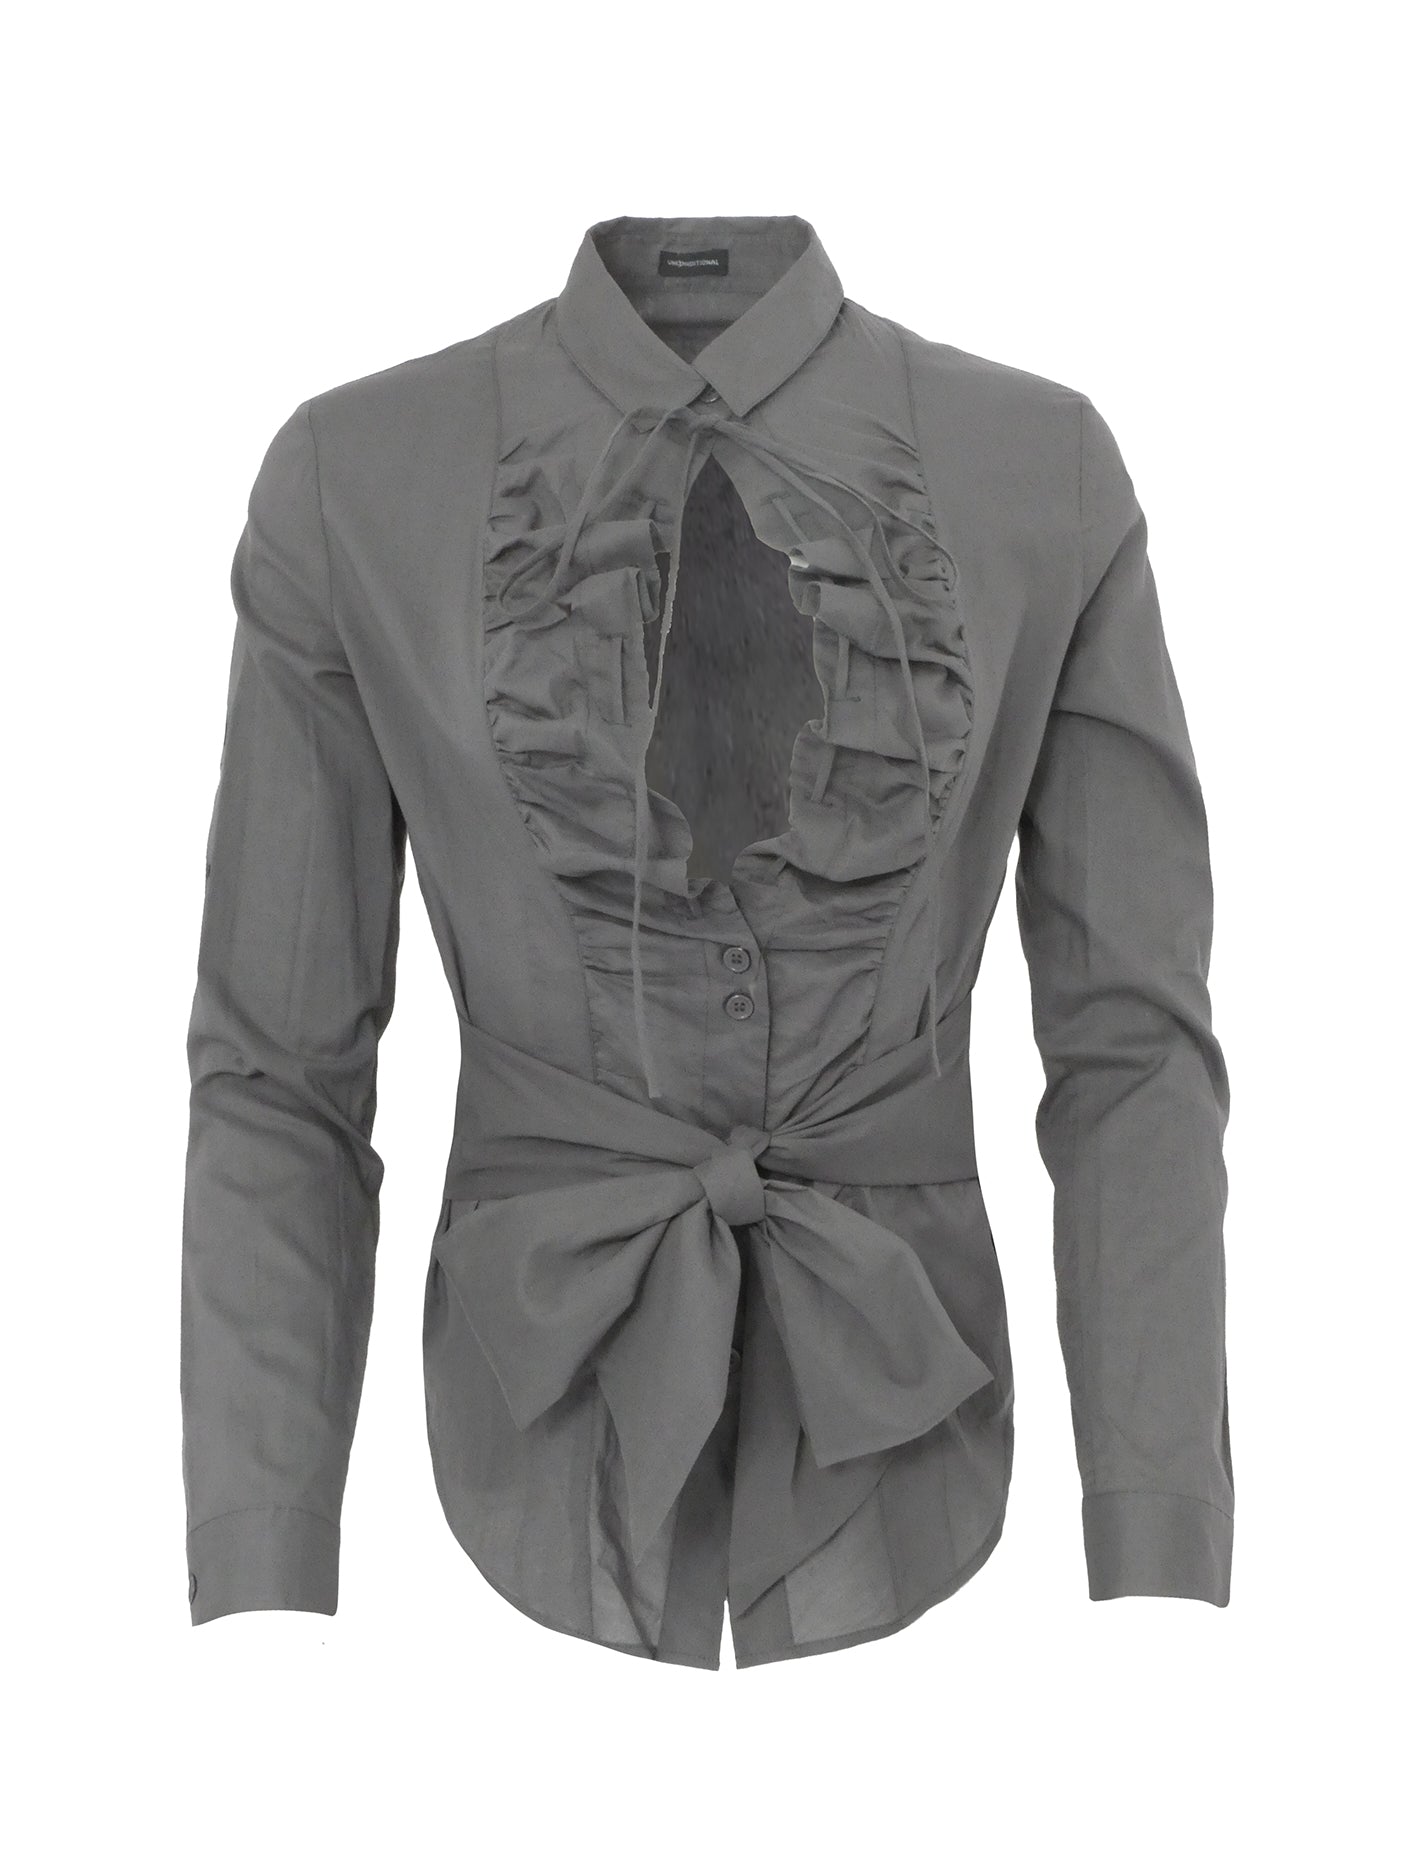 Women's Grey Shirt with Ruffled Details